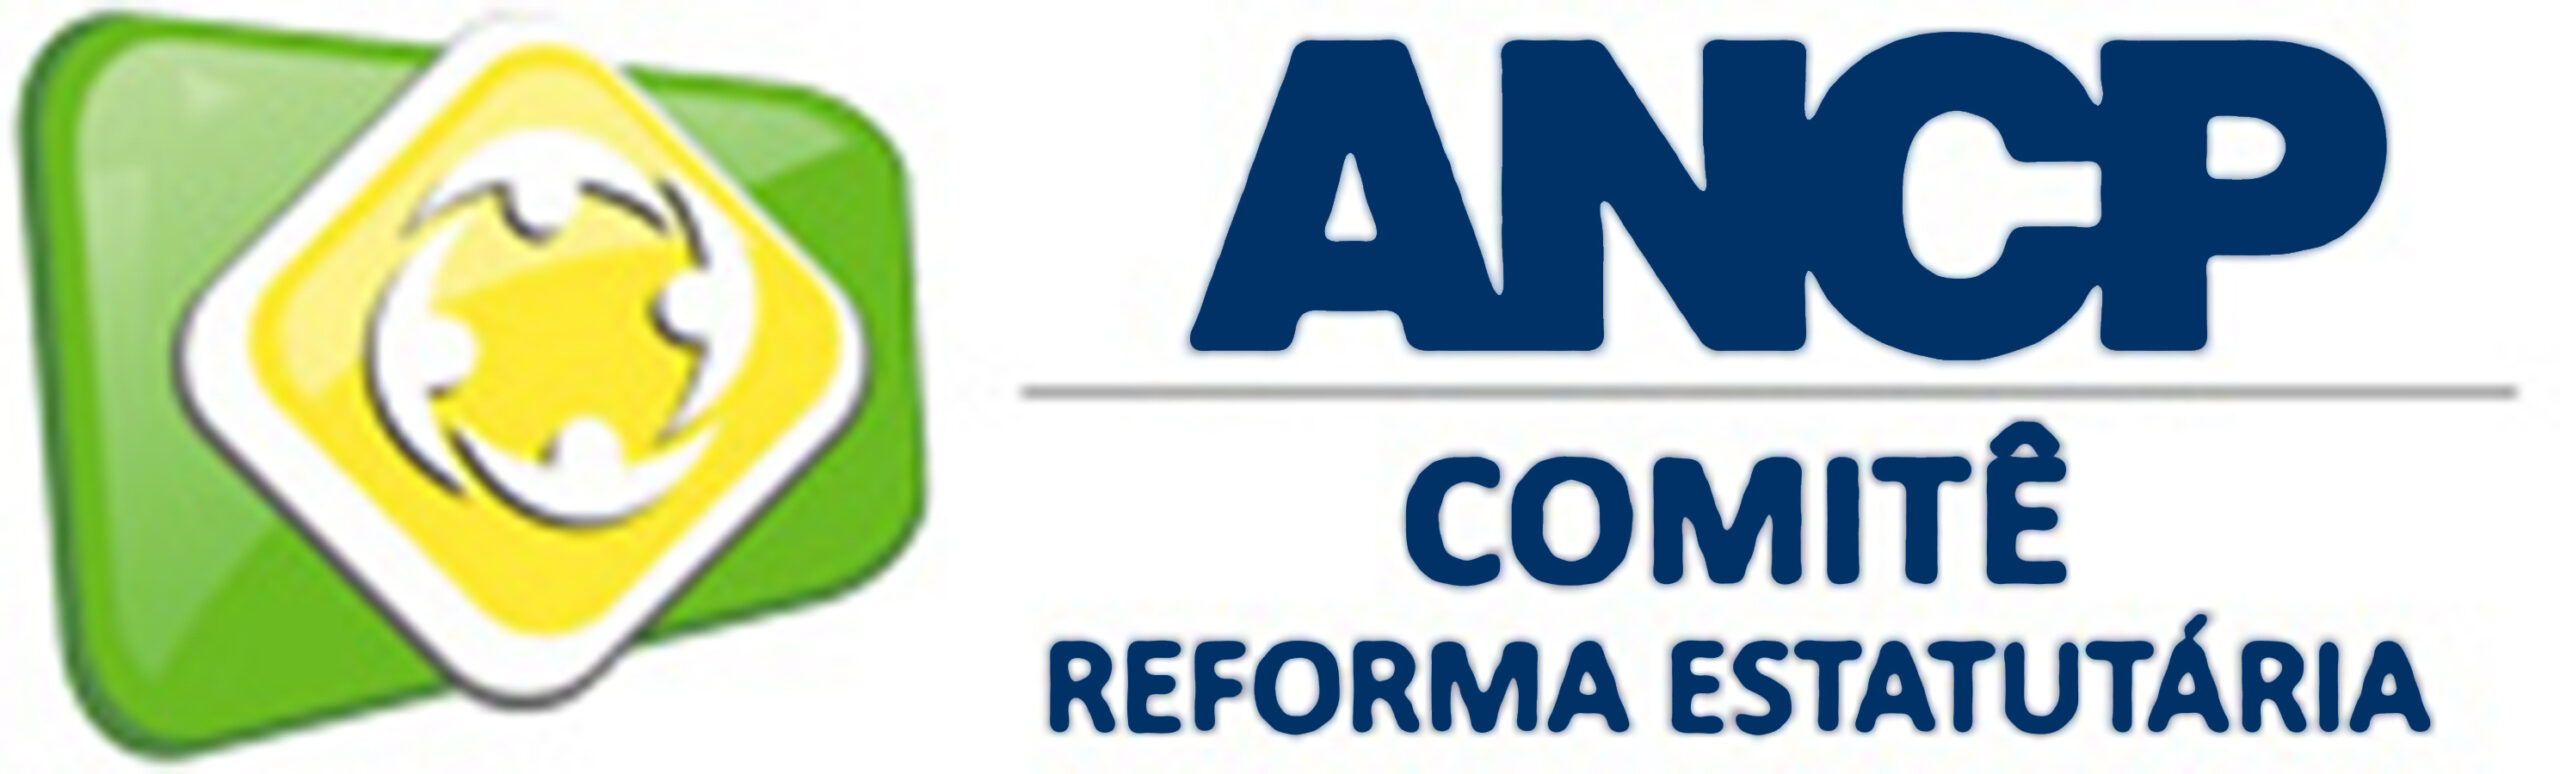 Comitê de Reforma Estatutária da ANCP realiza consulta pública